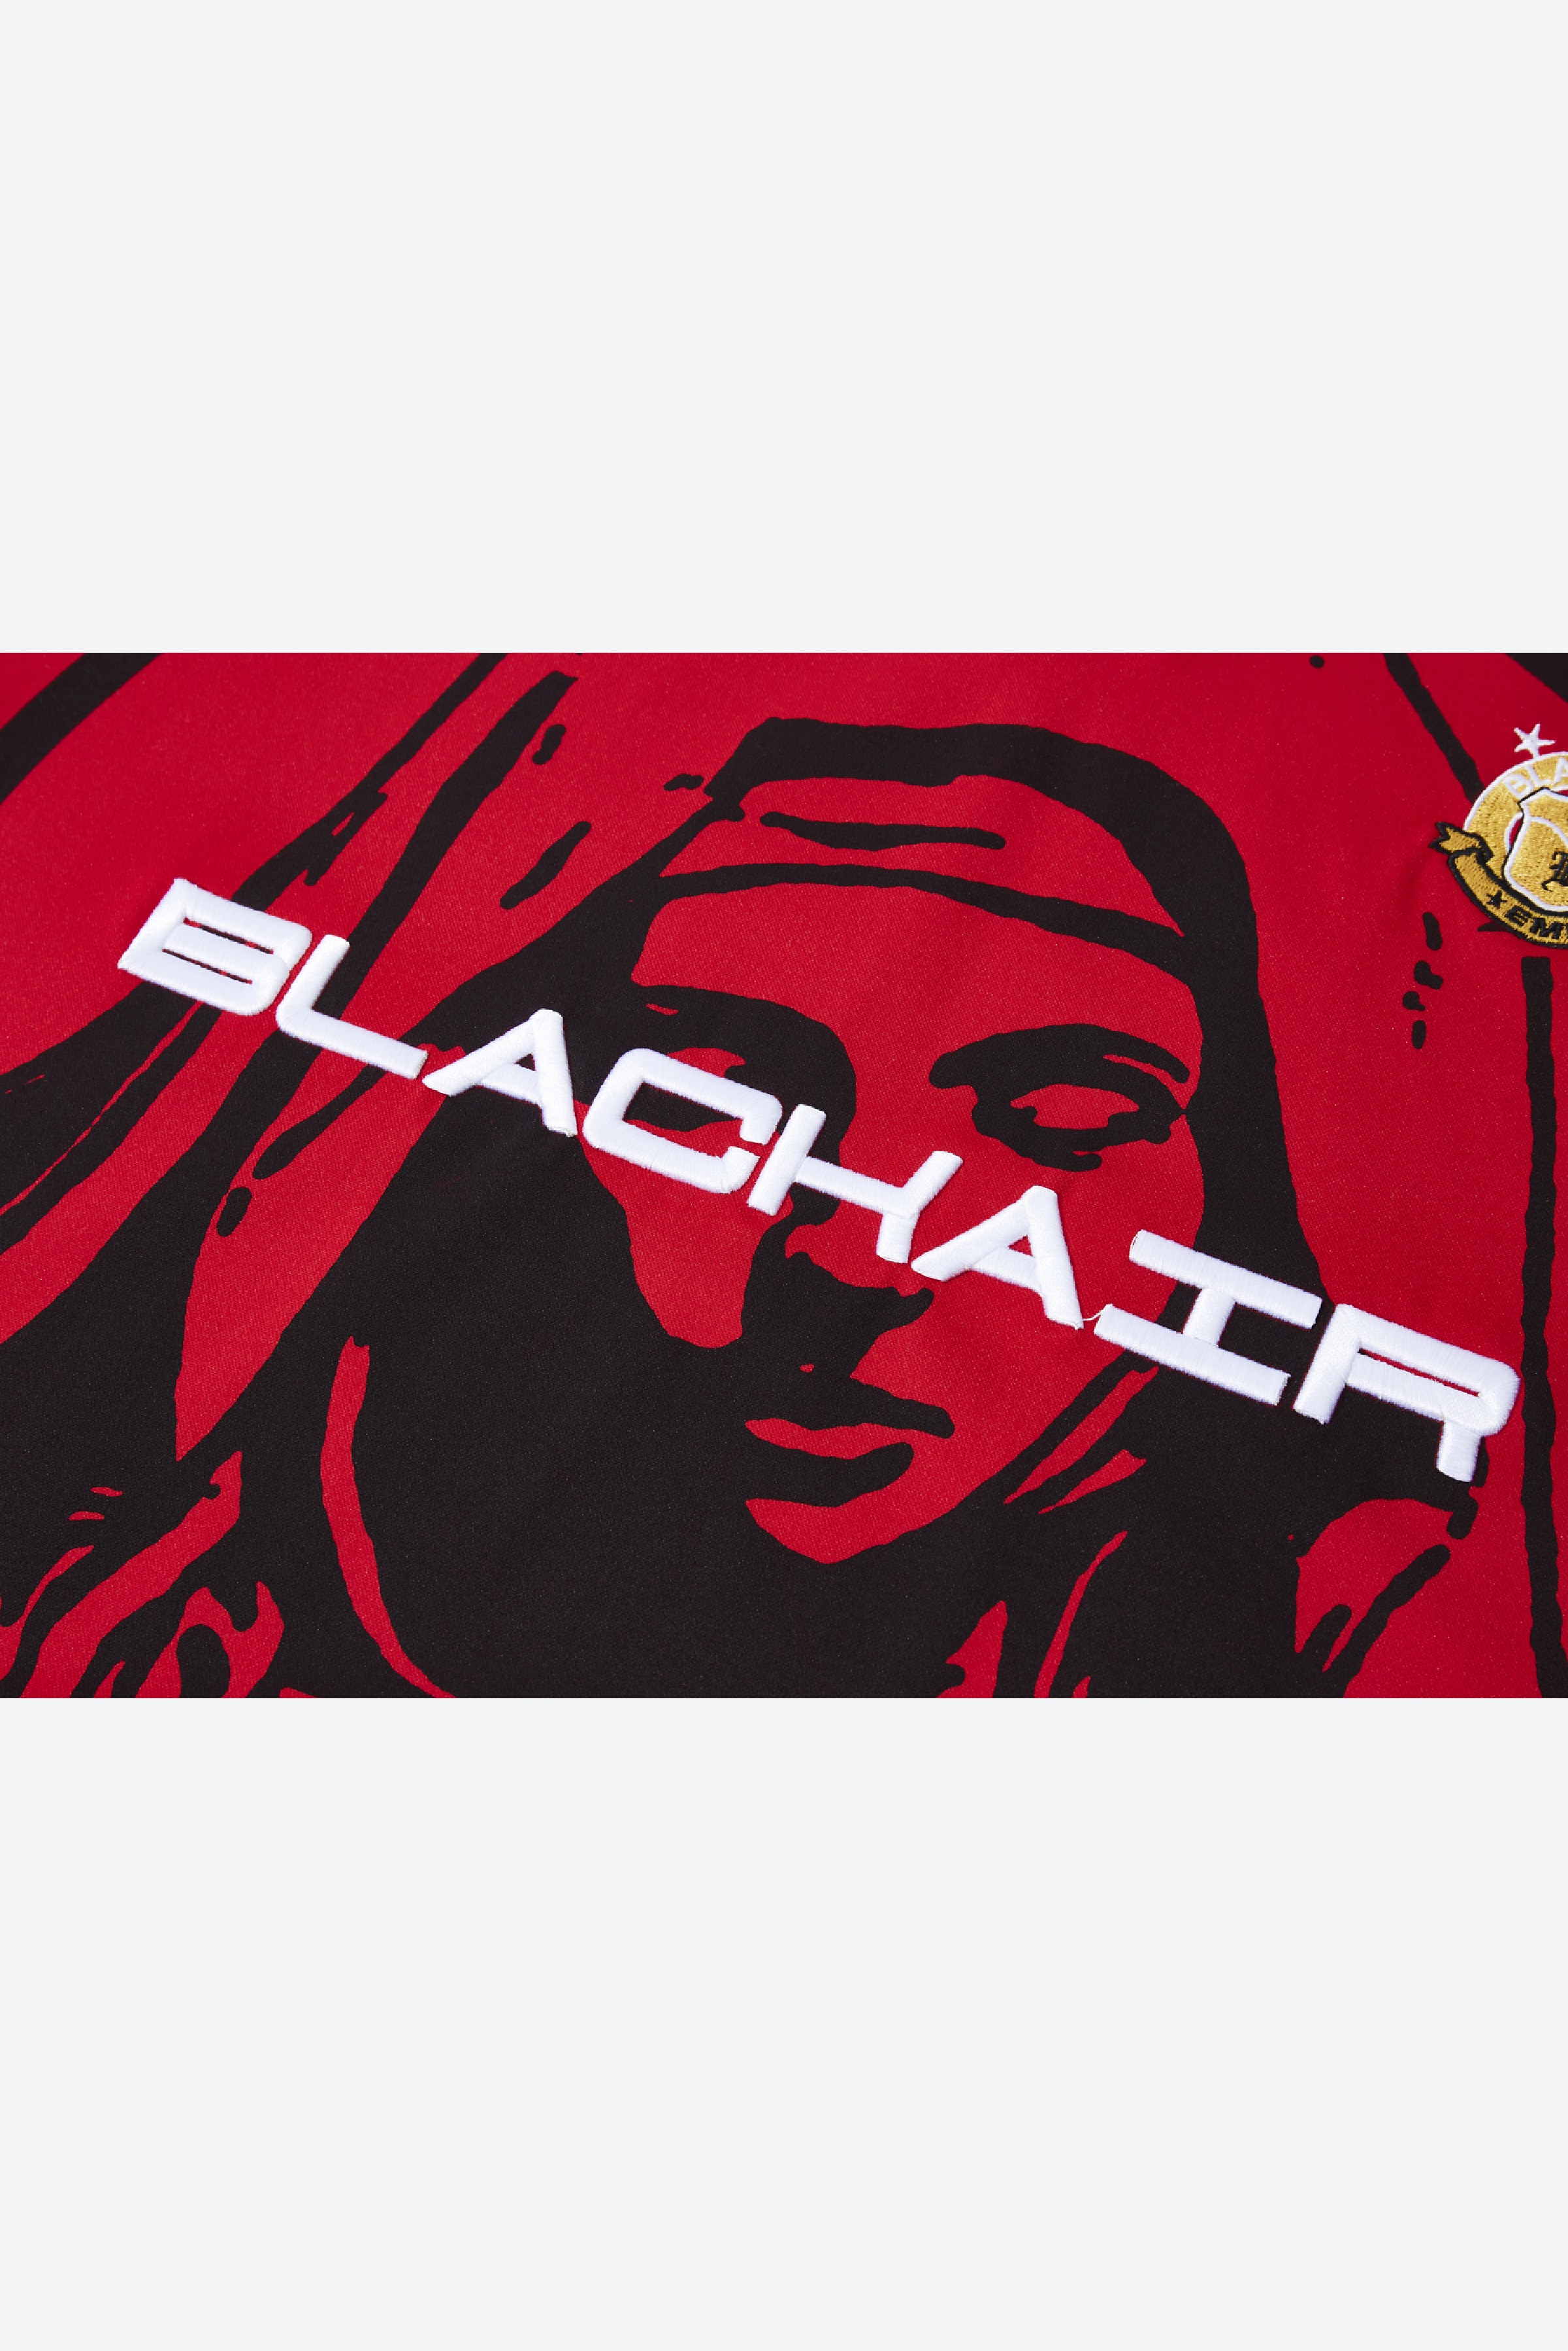 BLACKAIR - Red